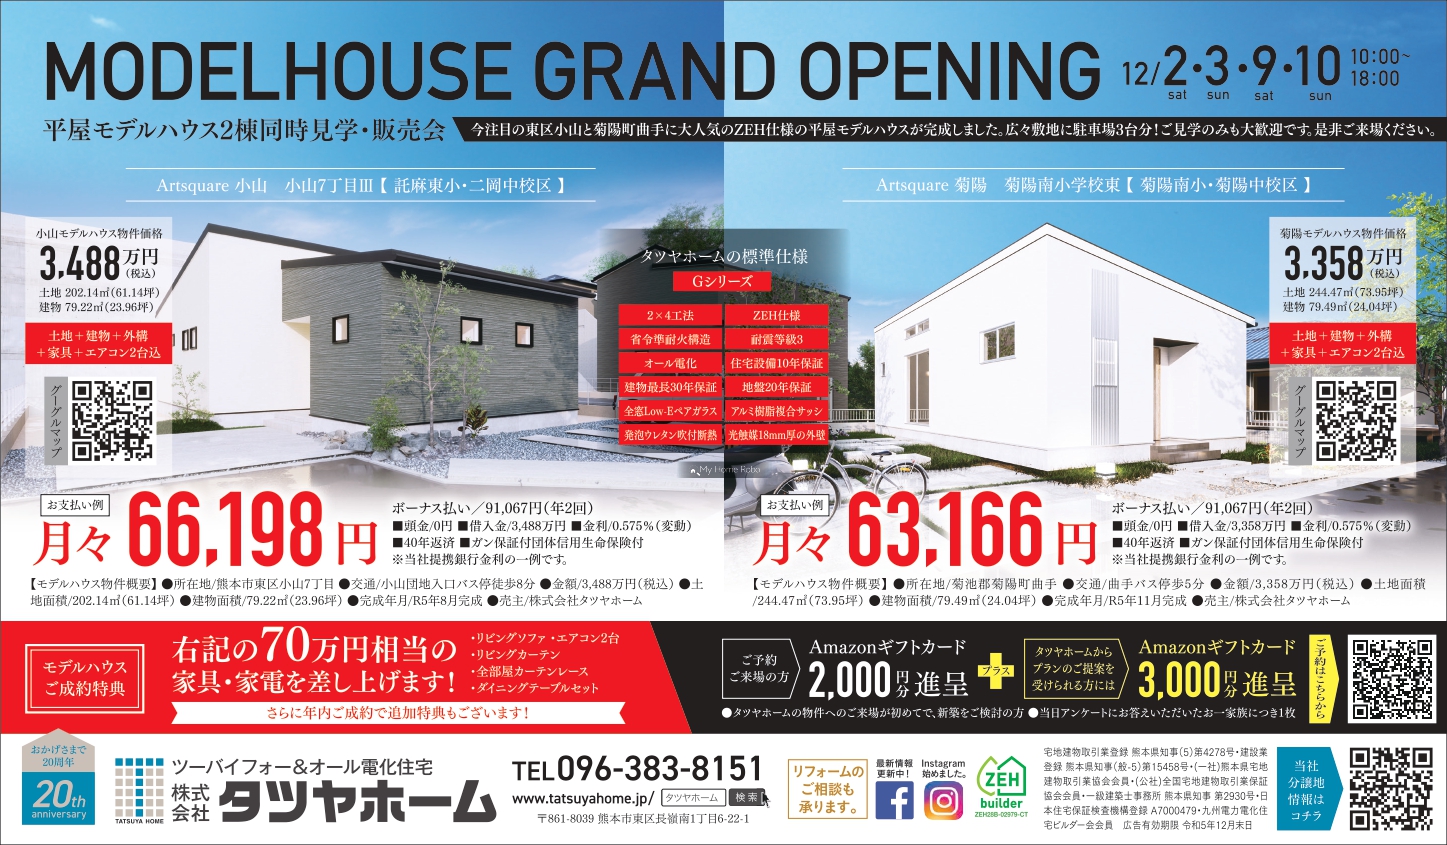 ZEH仕様 平屋モデルハウス2棟同時見学・販売会開催のお知らせ - 熊本の 